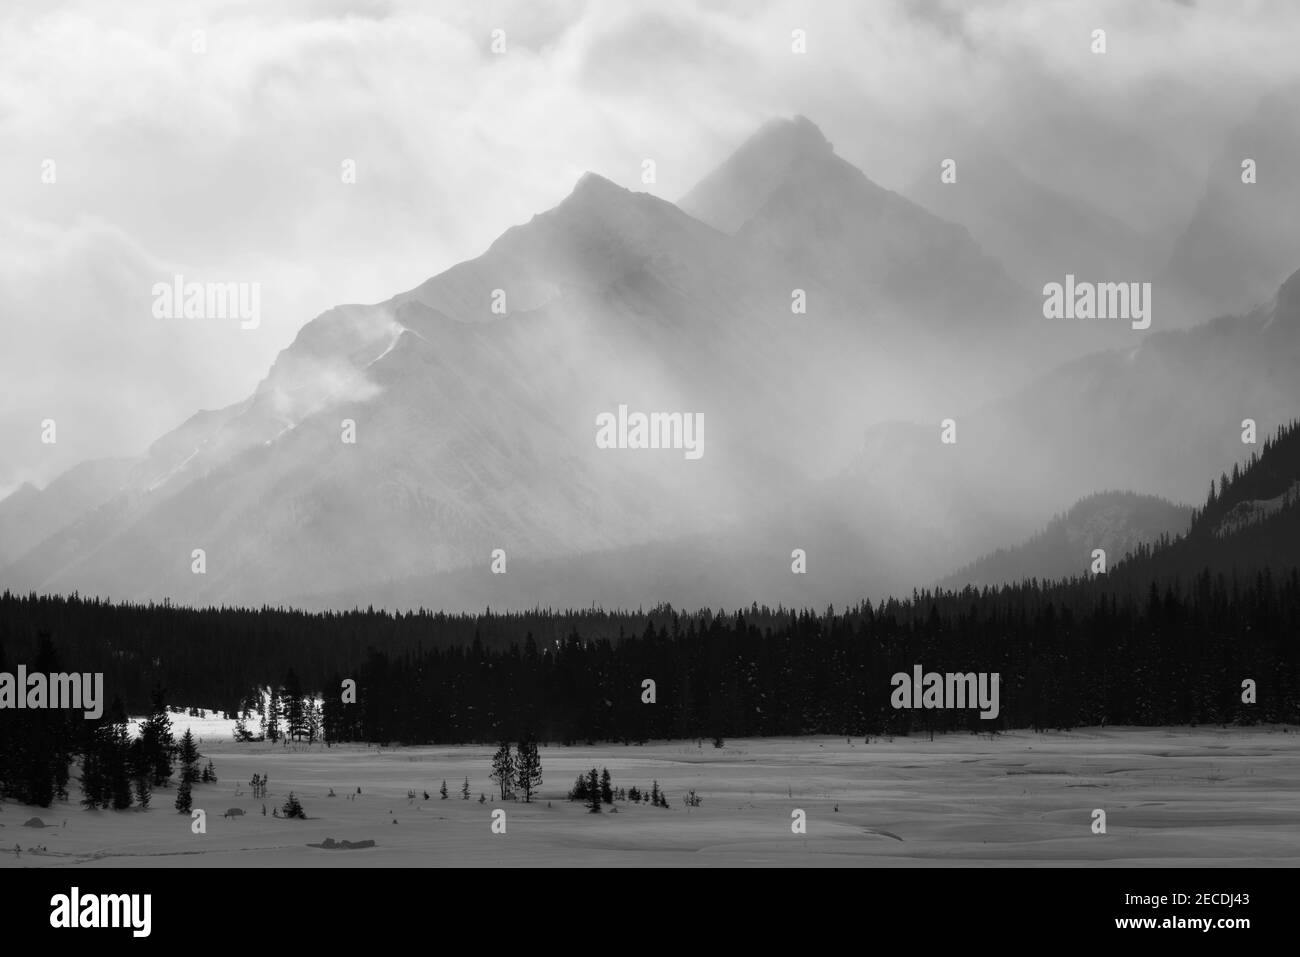 Vues en noir et blanc sur un paysage hivernal enneigé du pays de Kananaskis, en Alberta, au Canada. Banque D'Images